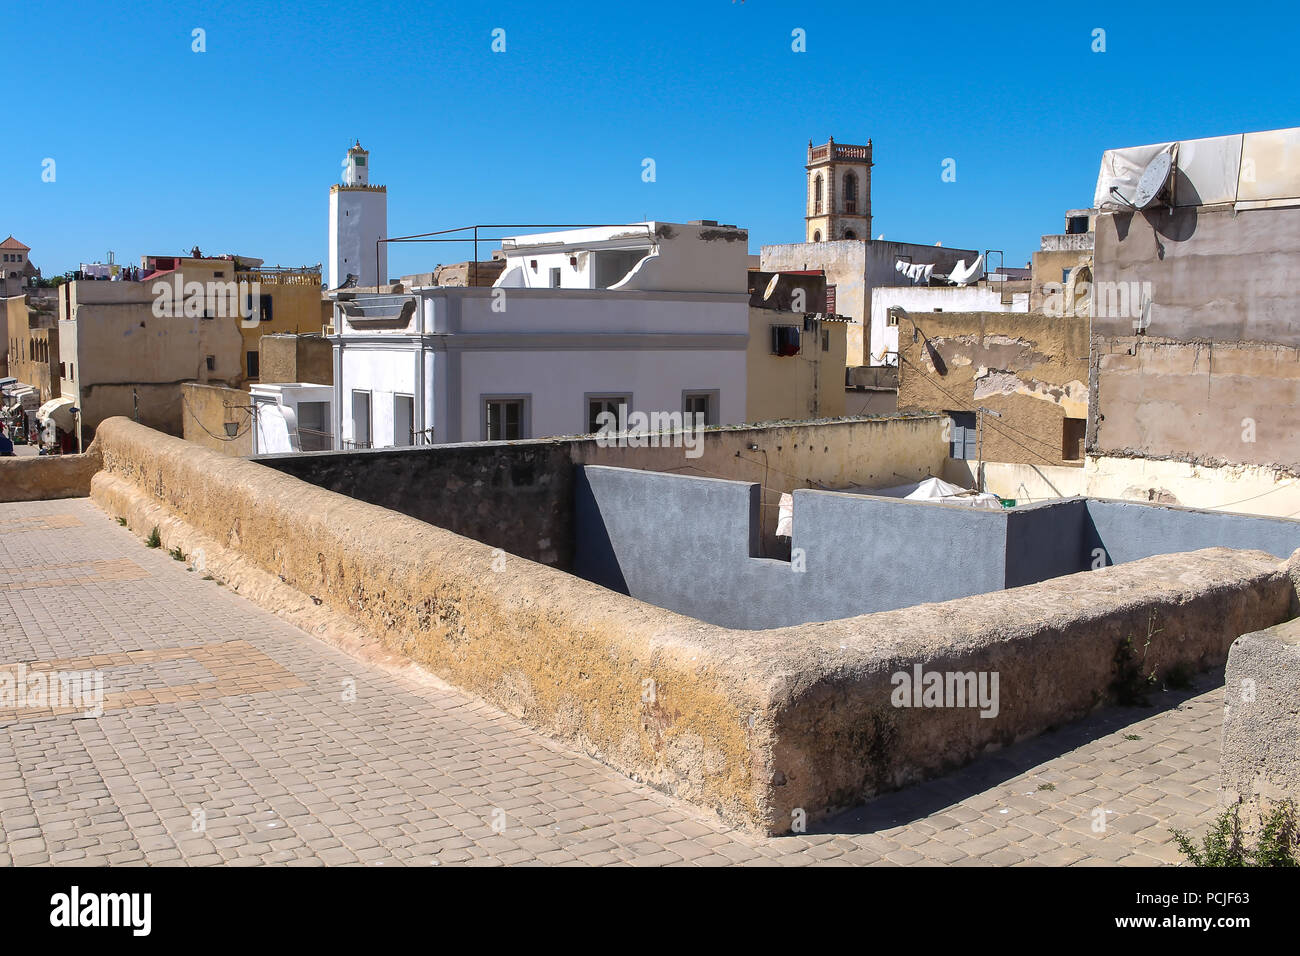 Toits et murs de l'immeuble d'habitations et d'une tour de grande mosquée de ancienne forteresse portugaise à El Jadida, Maroc. Ciel bleu. Banque D'Images